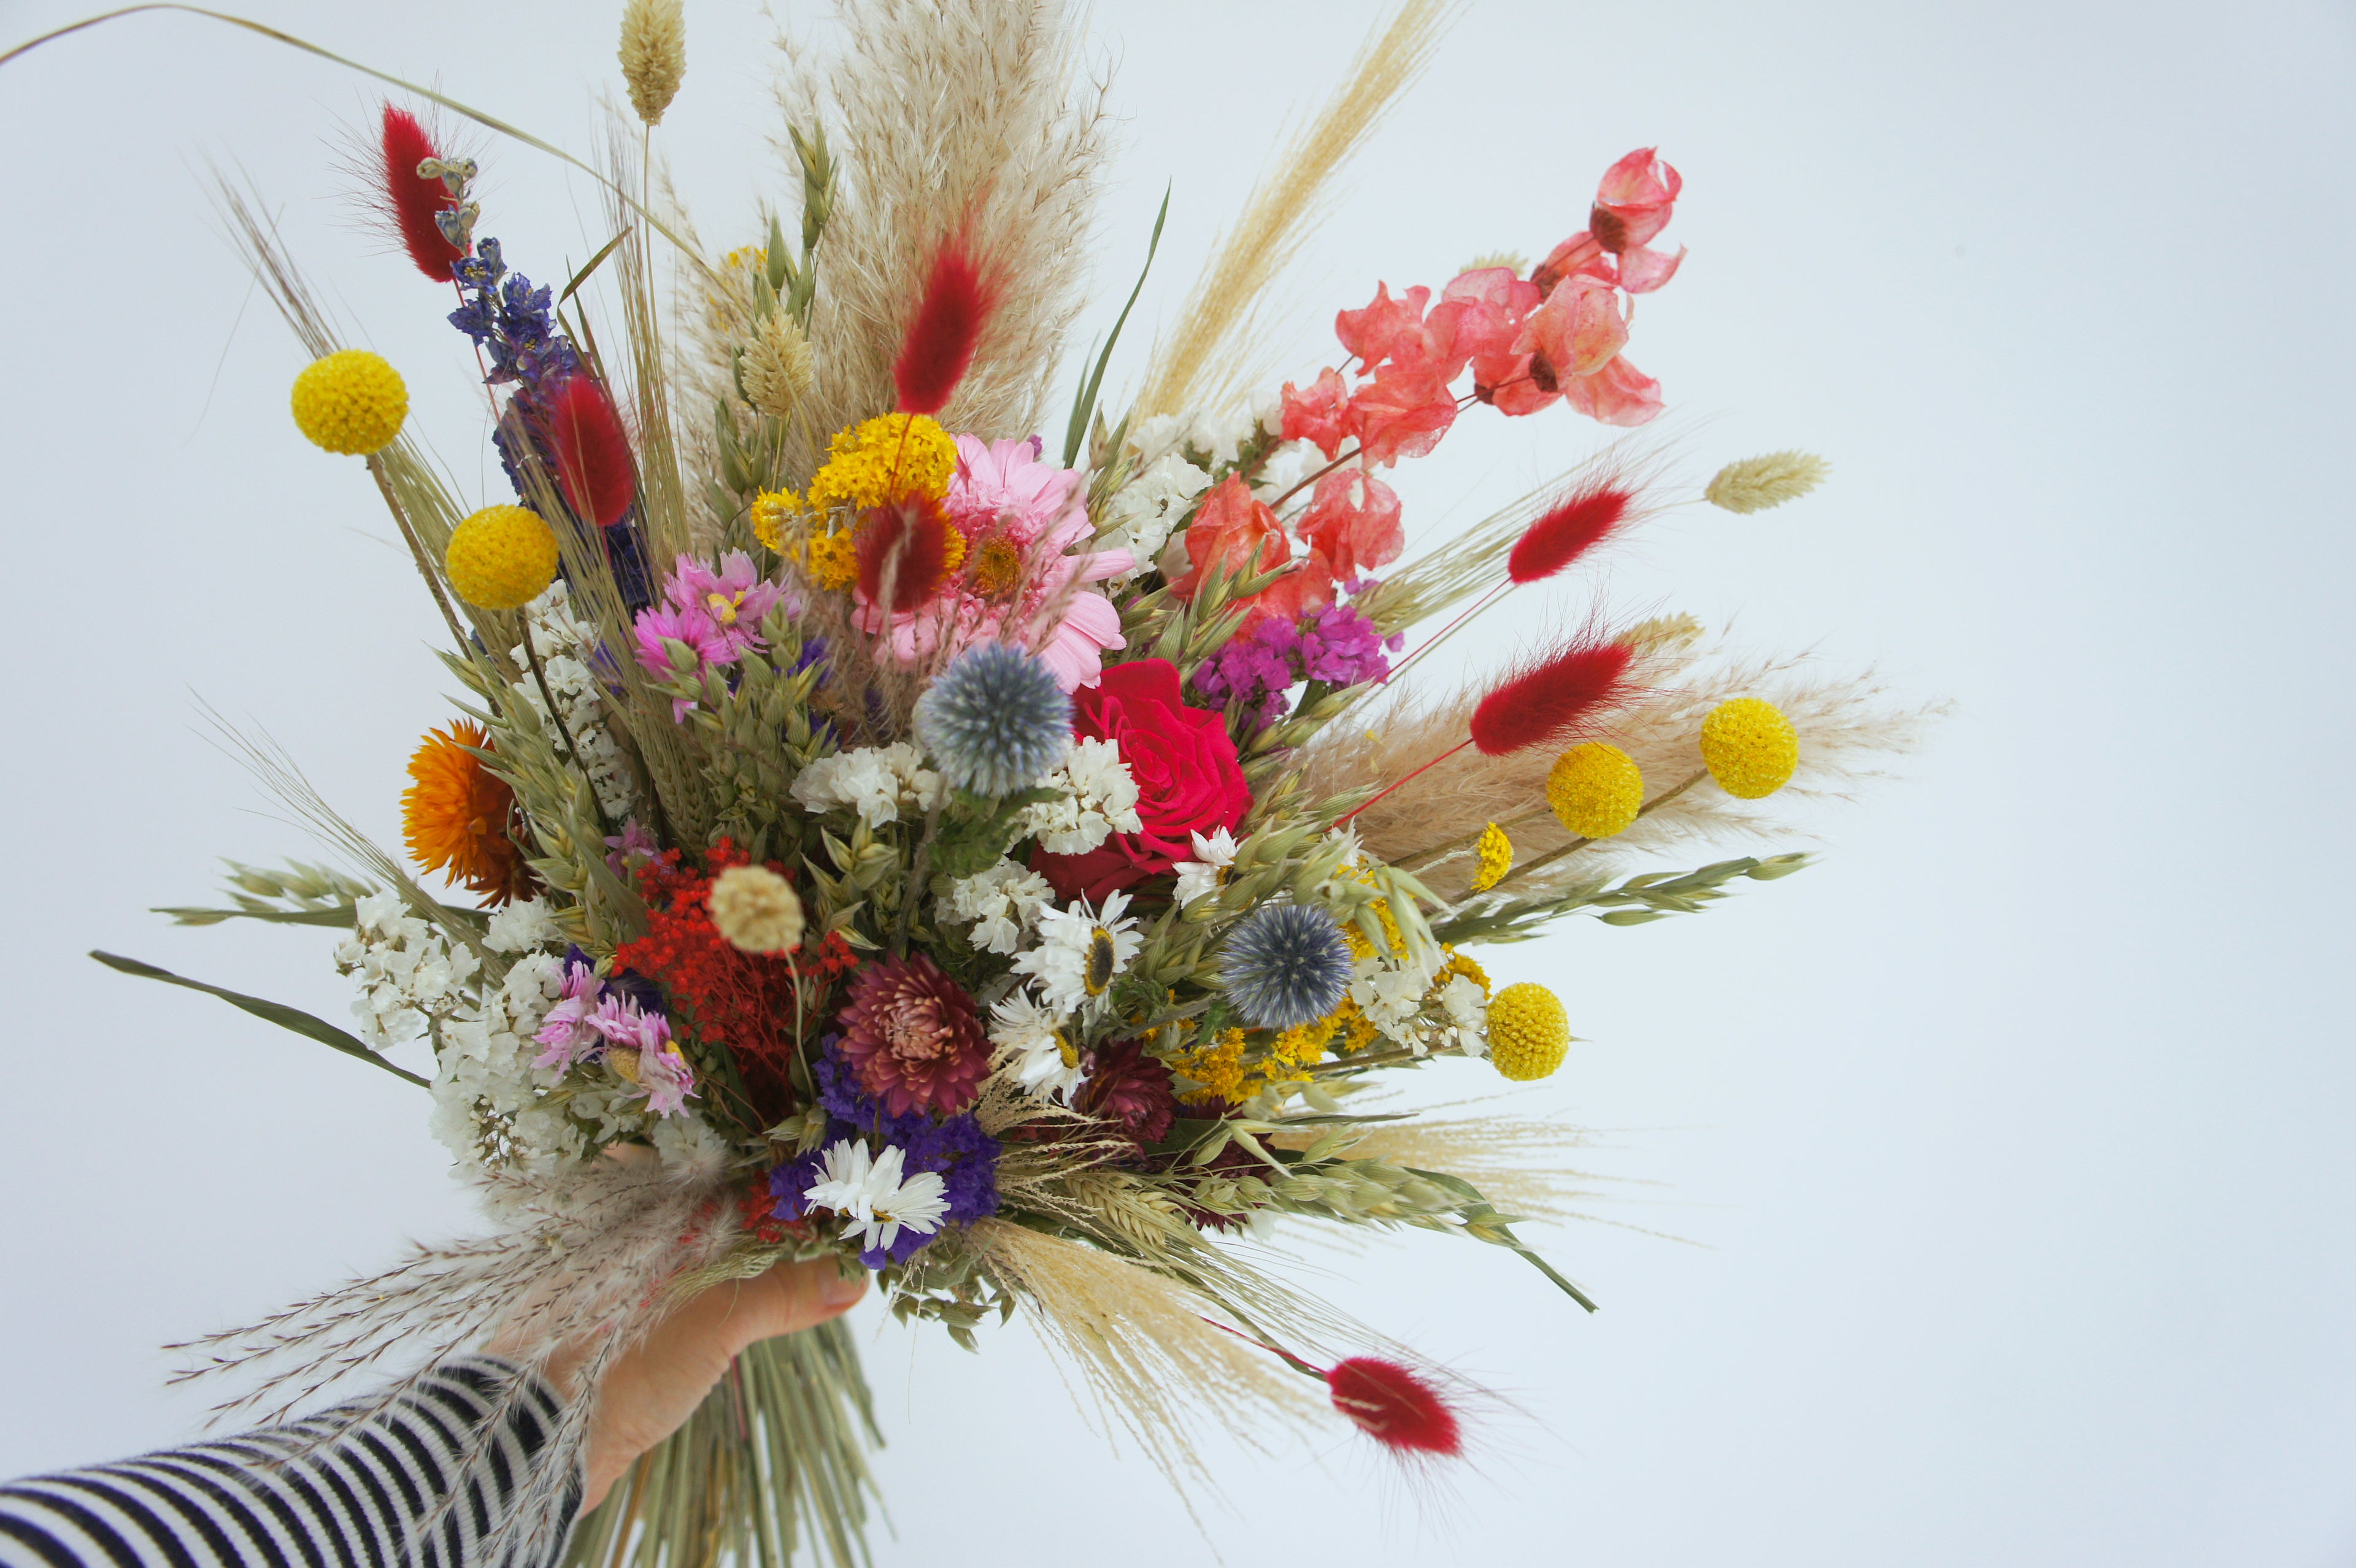 WIESENFEST, Trockenblumen, Dried flowers, Brautstrauß, Reversschmuck, Haarkamm, Haarkranz, bunt, Wiesenblumen